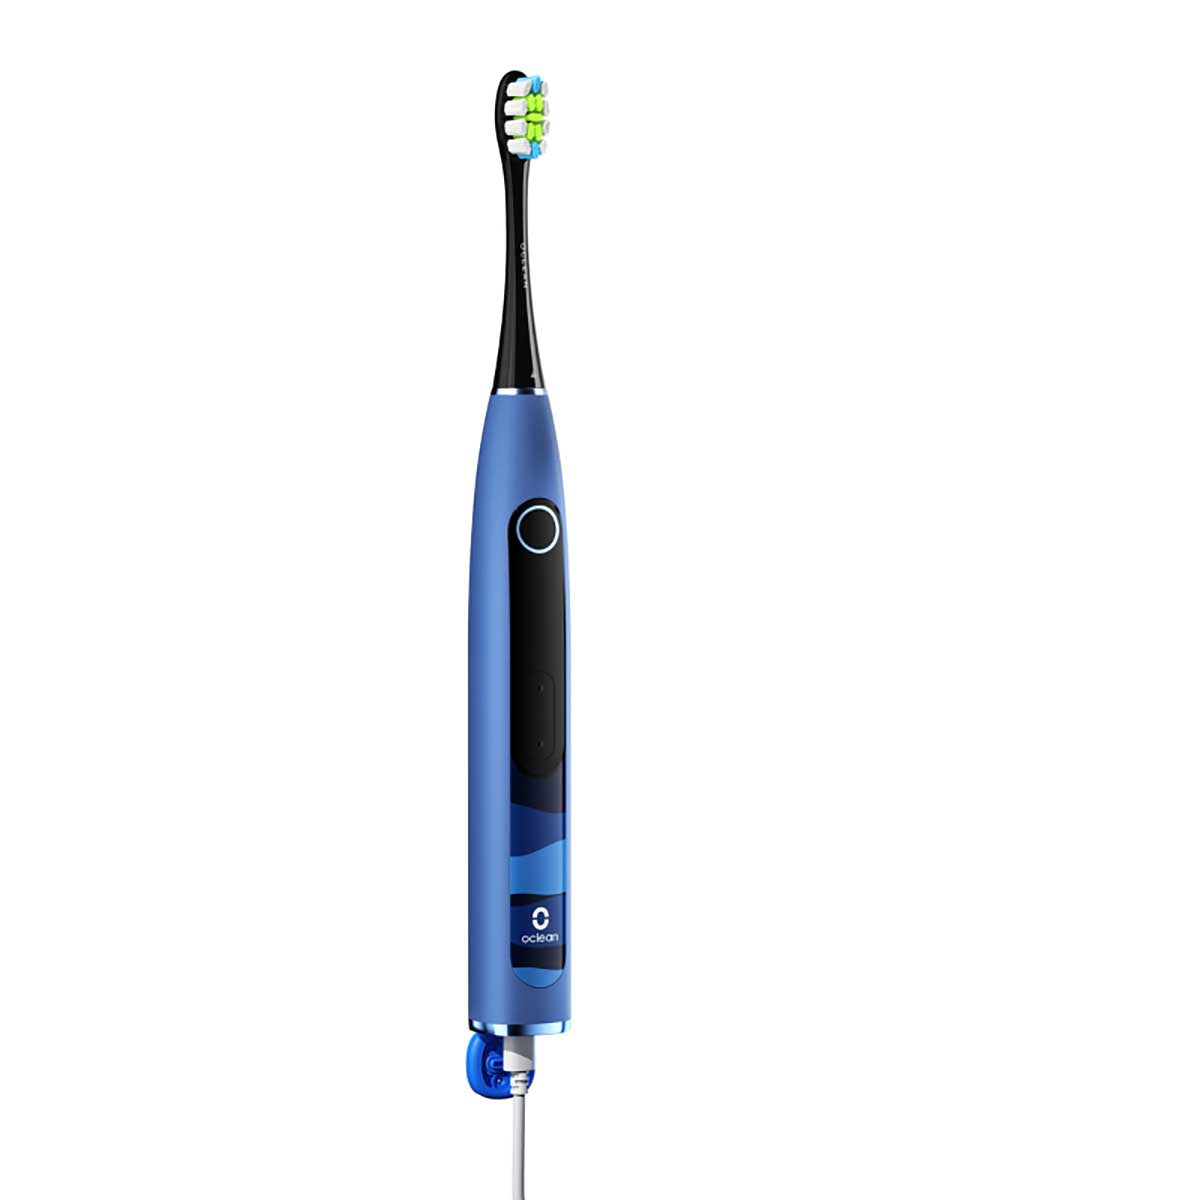 Oclean X10 智能聲波電動牙刷（海洋藍）C01000333